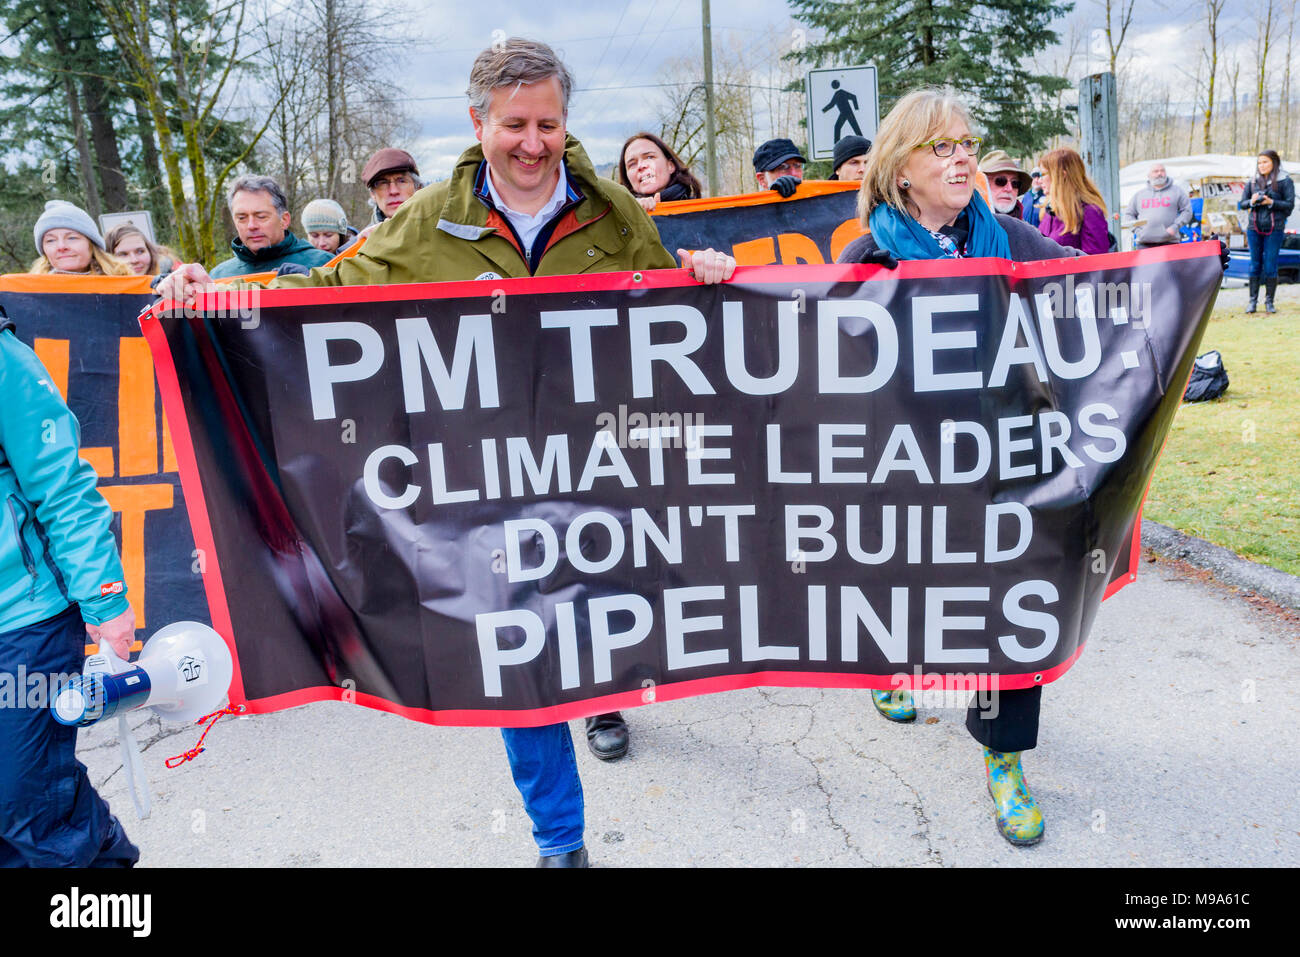 Canadian Green Party leader MP Elizabeth Mai und NDP MP Kennedy Stewart vor an Kinder Morgan Pipeline Protest, Burnaby, British Columbia, Kanada verhaftet wurde. Quelle: Michael Wheatley/Alamy leben Nachrichten Stockfoto